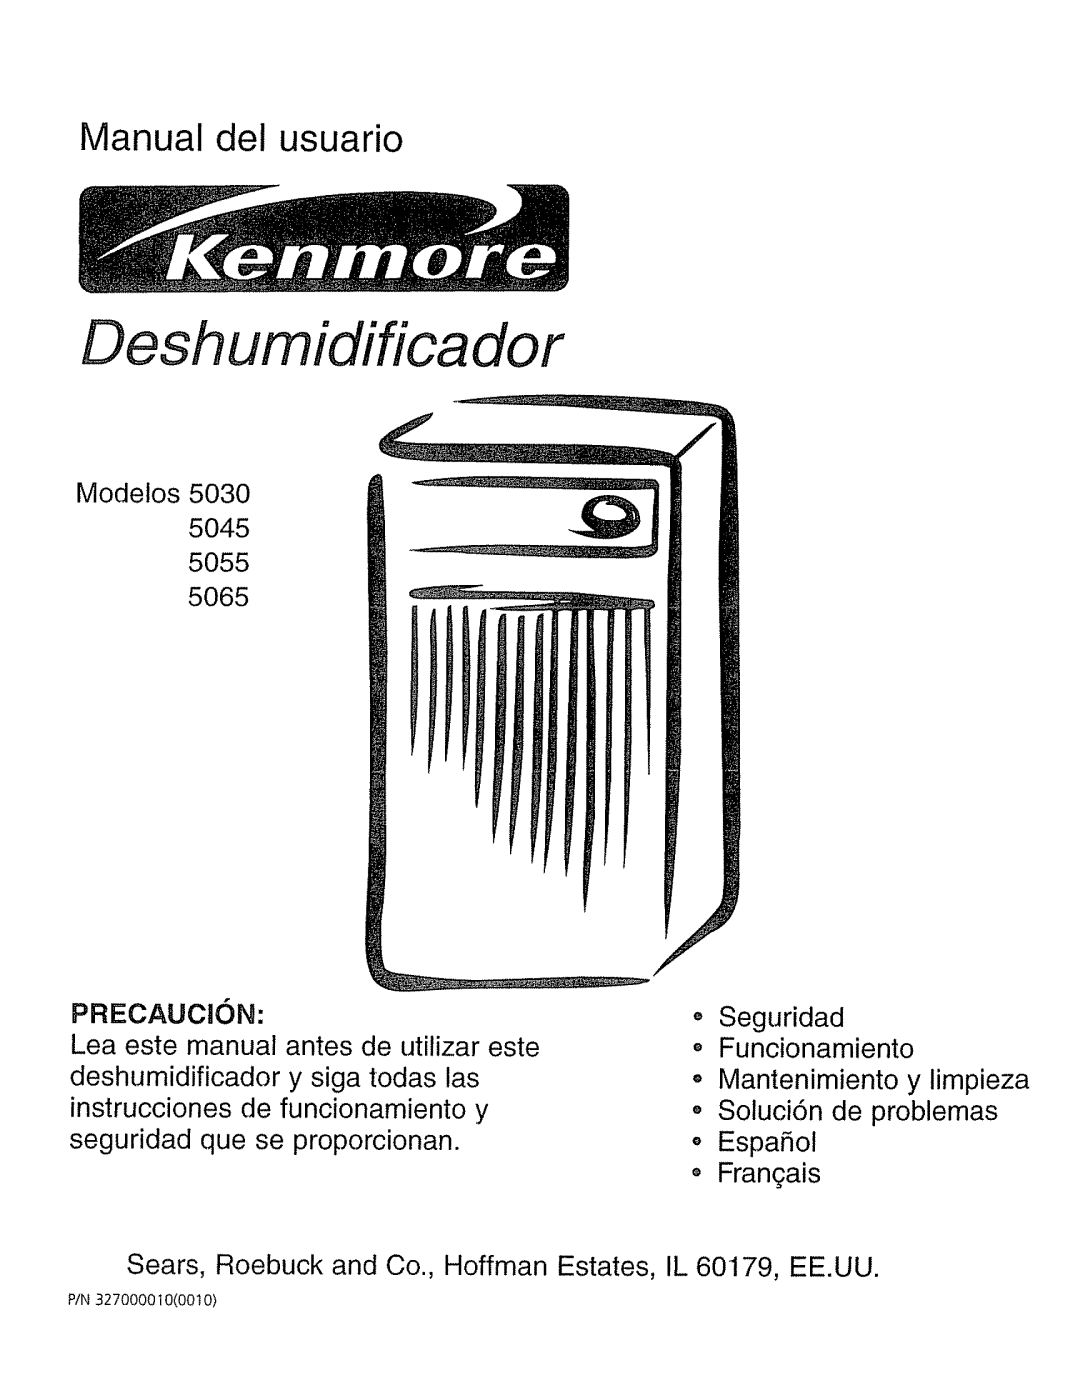 Kenmore 5065 Desh umidif ica dor, Manual del usuario, Modetos 5030 5045 5055, PRECAUCiON, Seguridad Funcionamiento 